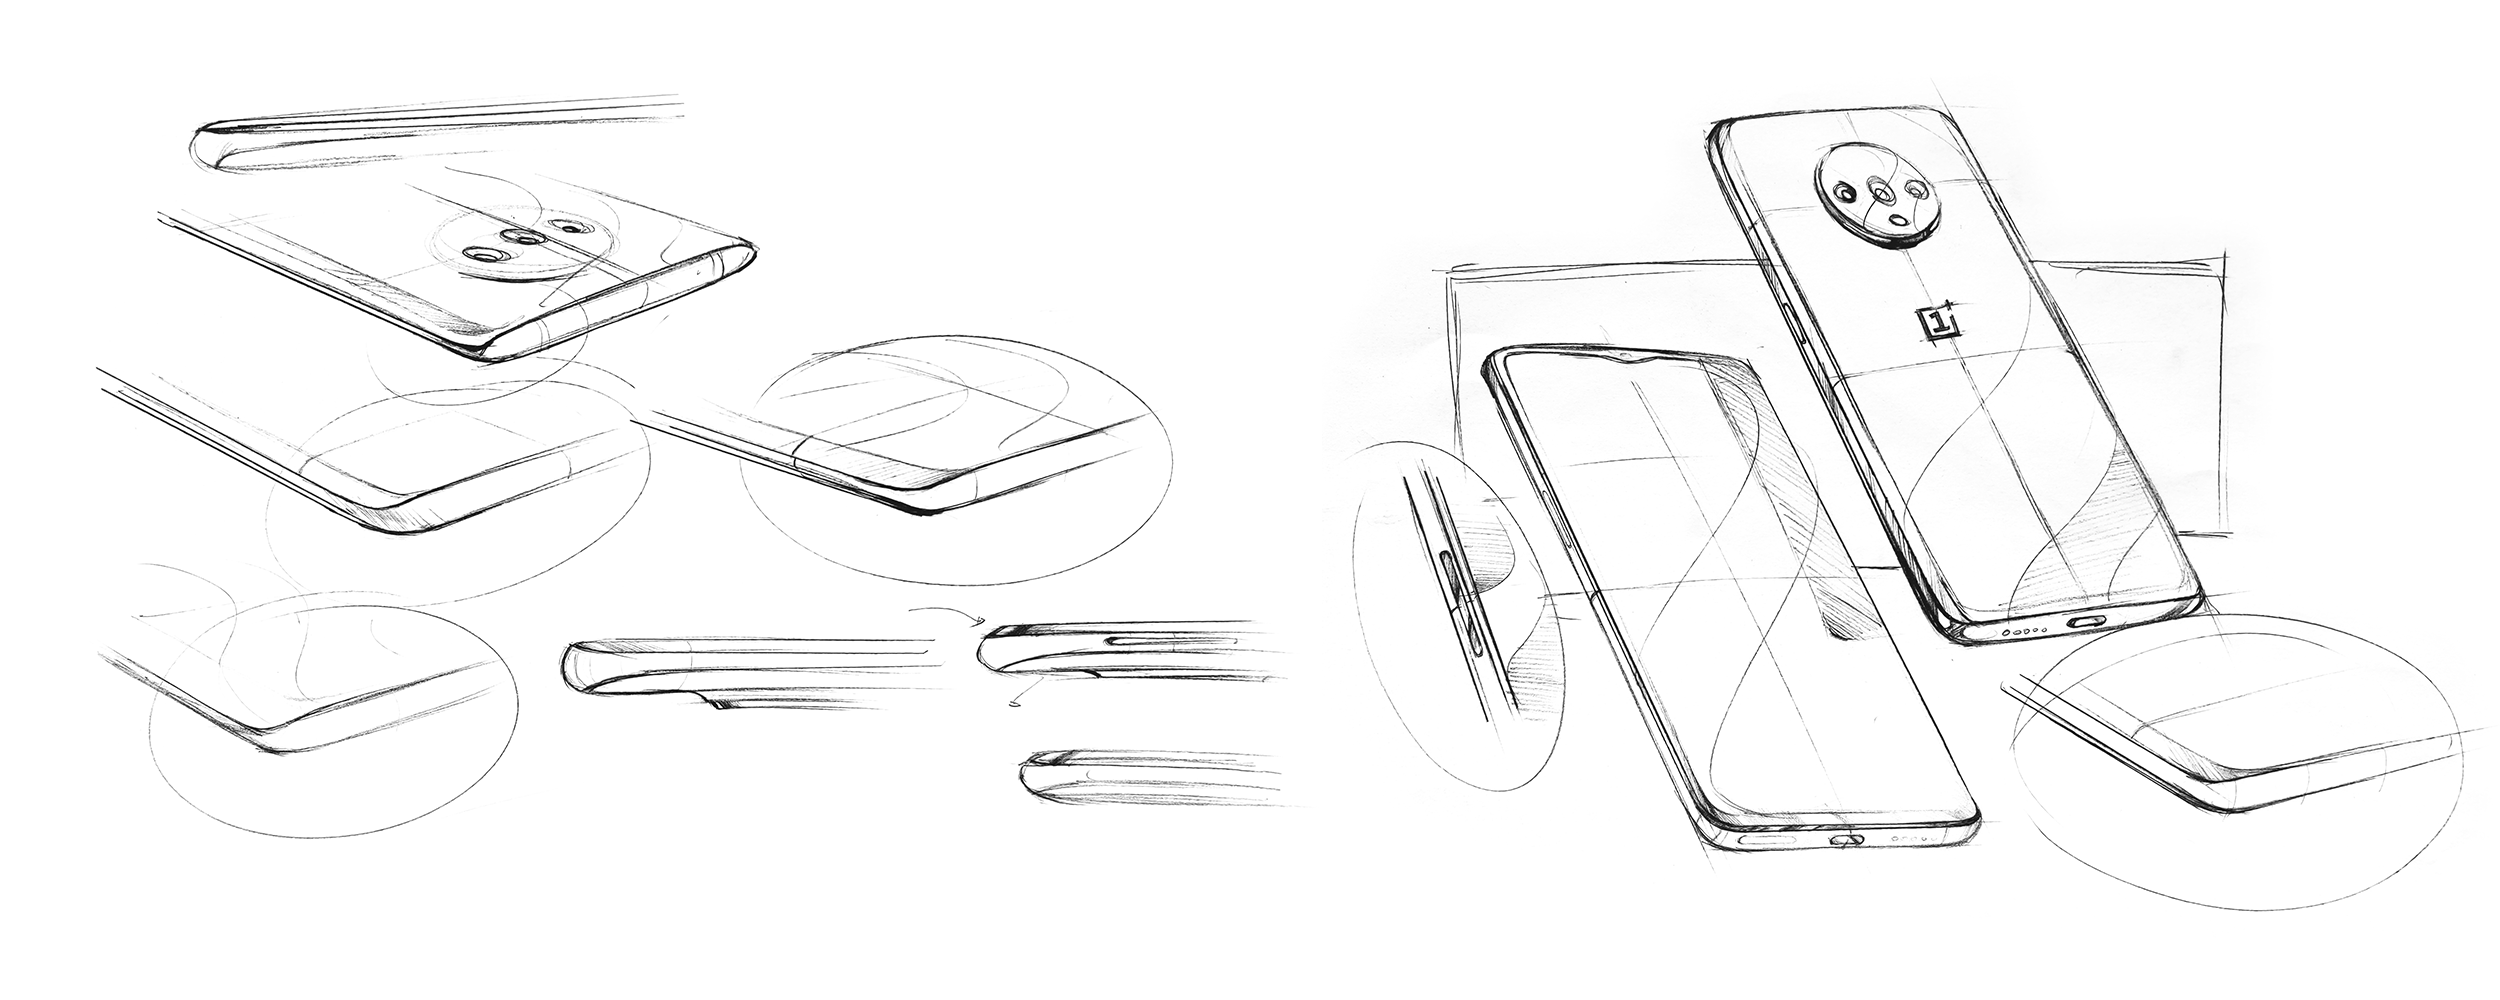 كشفت التصميمات الرسمية لـ OnePlus 7T عن تصميم زجاجي لامع من الجيل الرابع وكاميرات خلفية ثلاثية 2